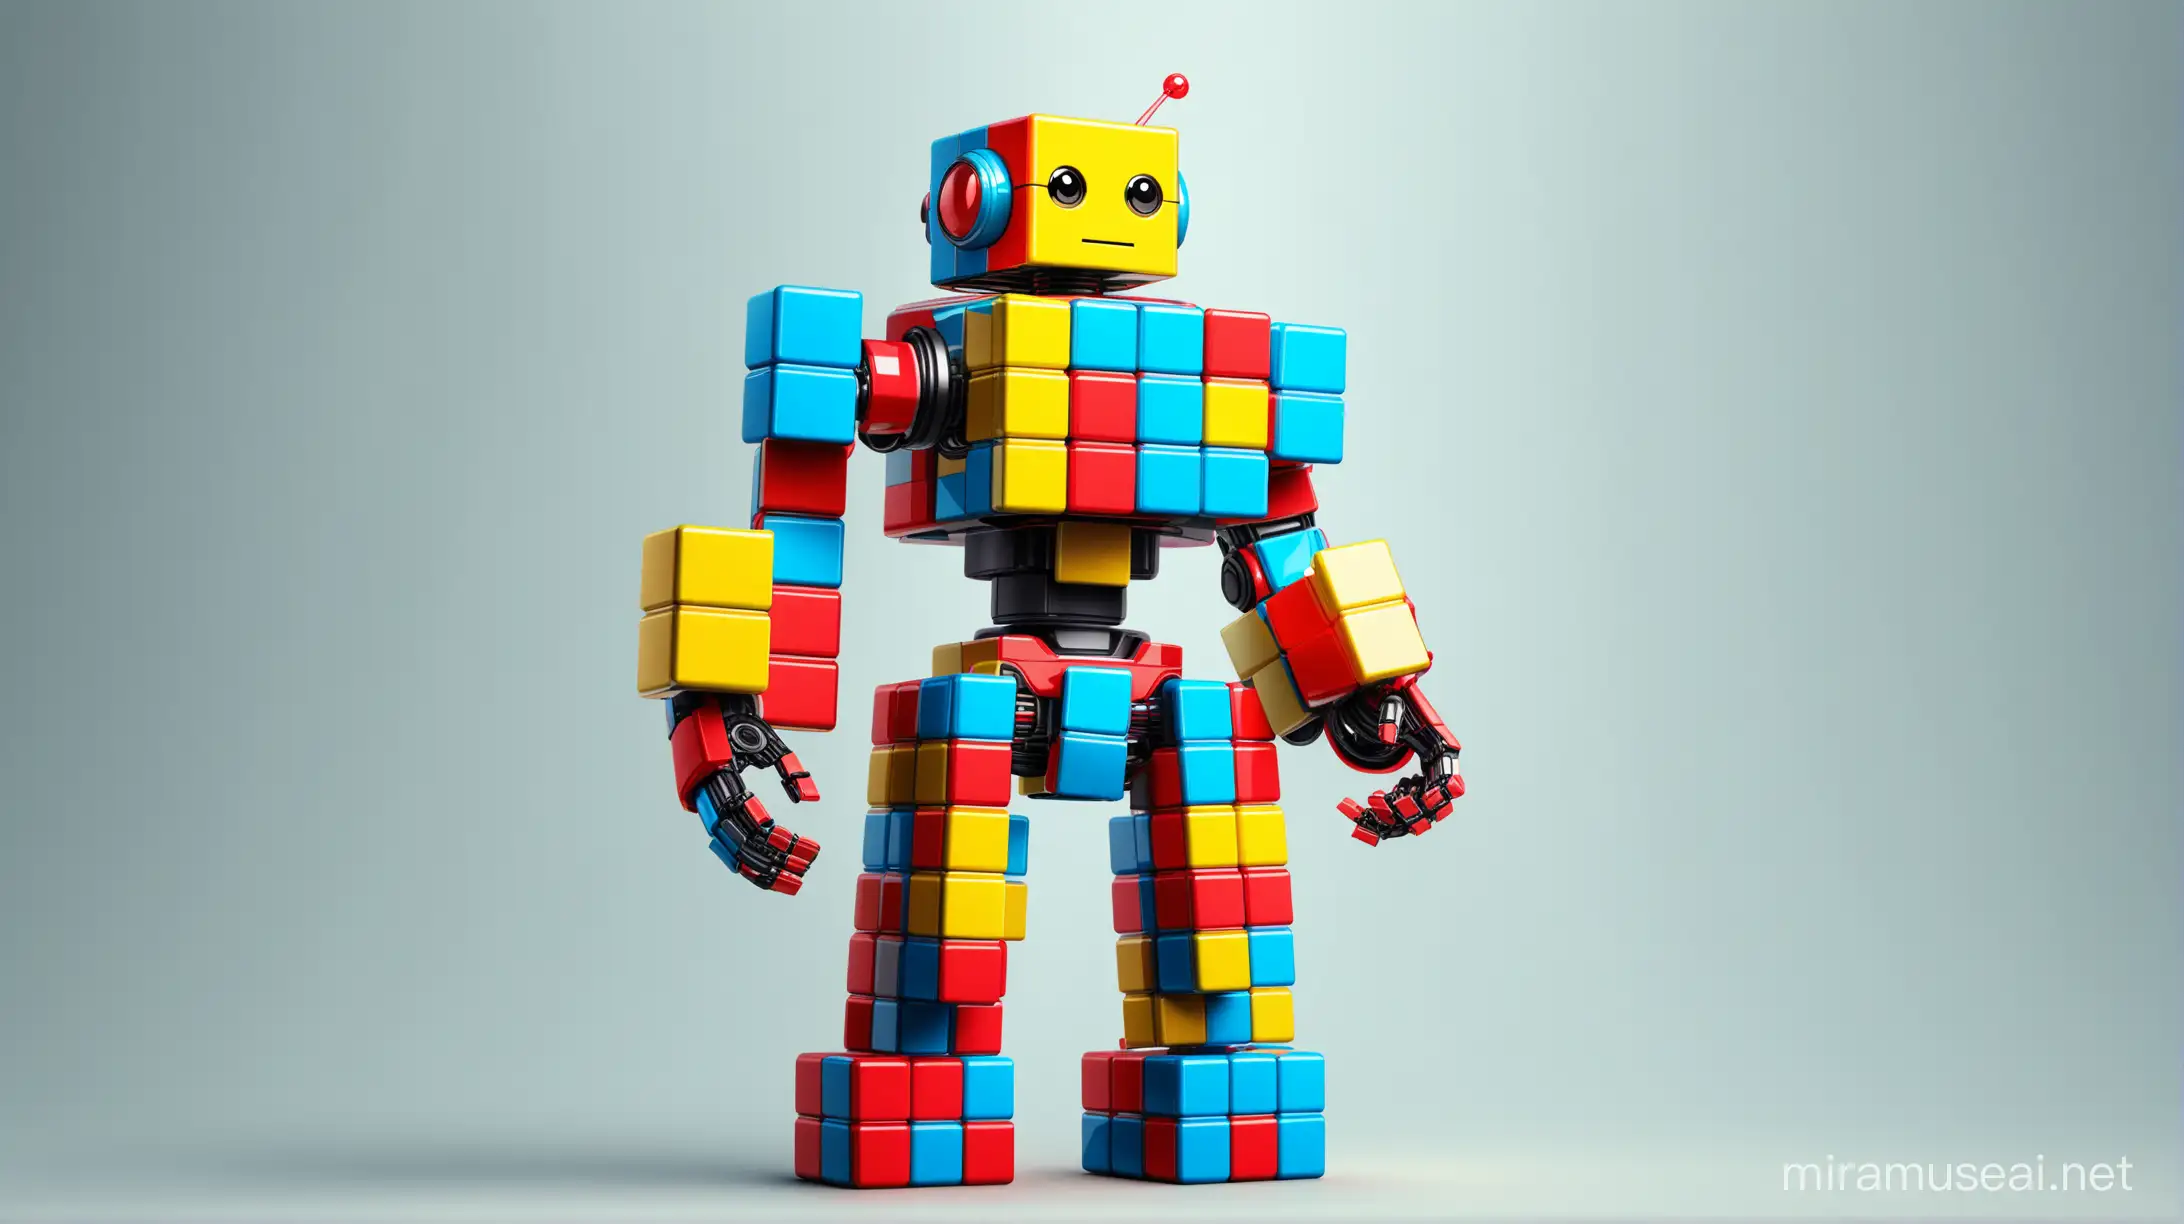 Colorful 3D Robot Solving Rubiks Cube Puzzle